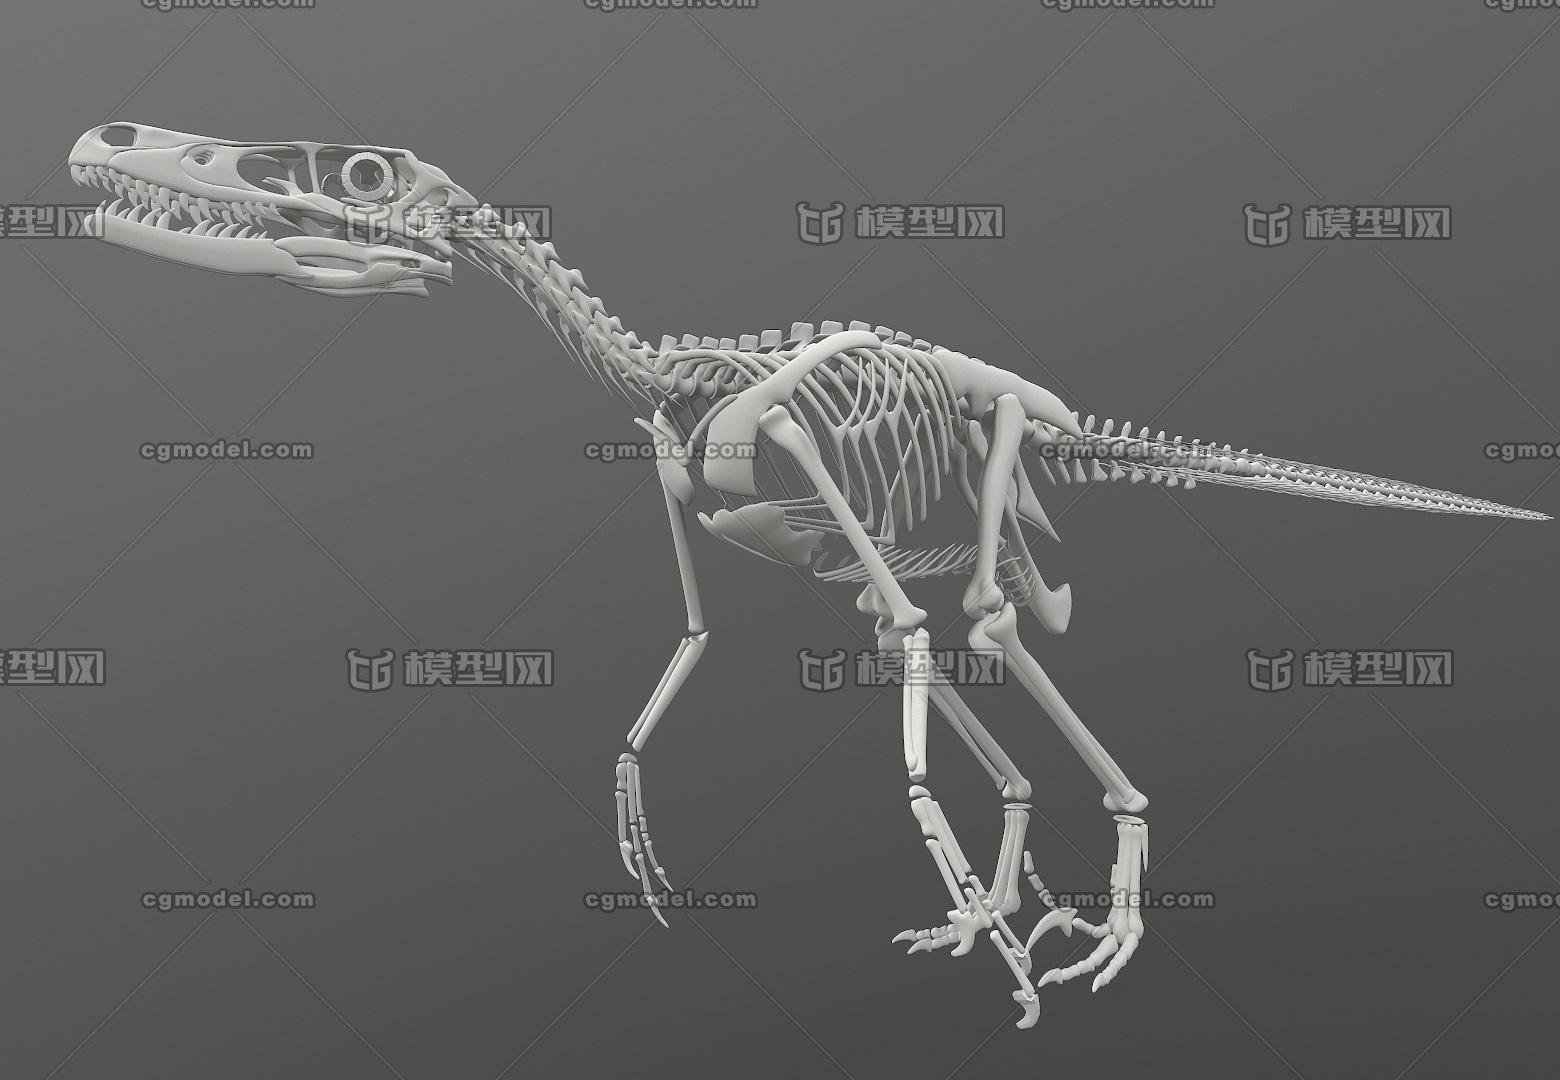 白垩纪 迅猛龙  高精细全身骨架  标准四边面  快盗龙骨骼   恐龙